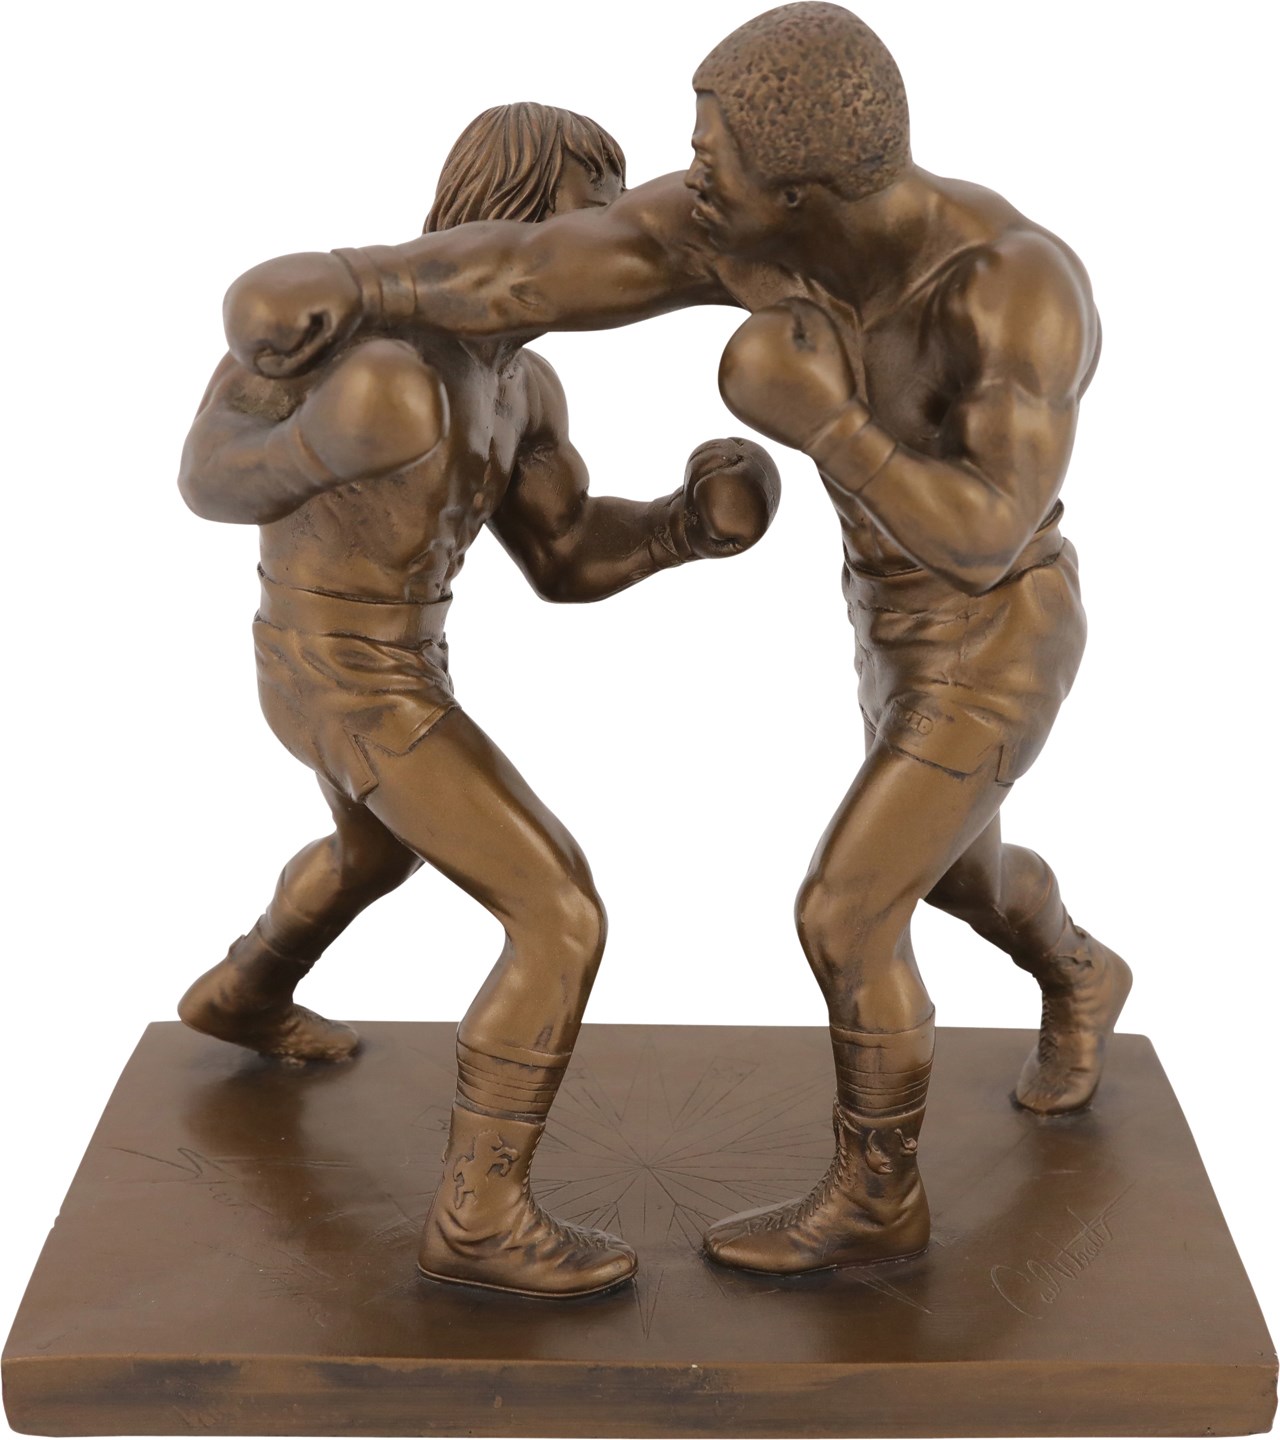 - 1979 Rocky Balboa vs Apollo Creed Statue by Giovanni Schoeman